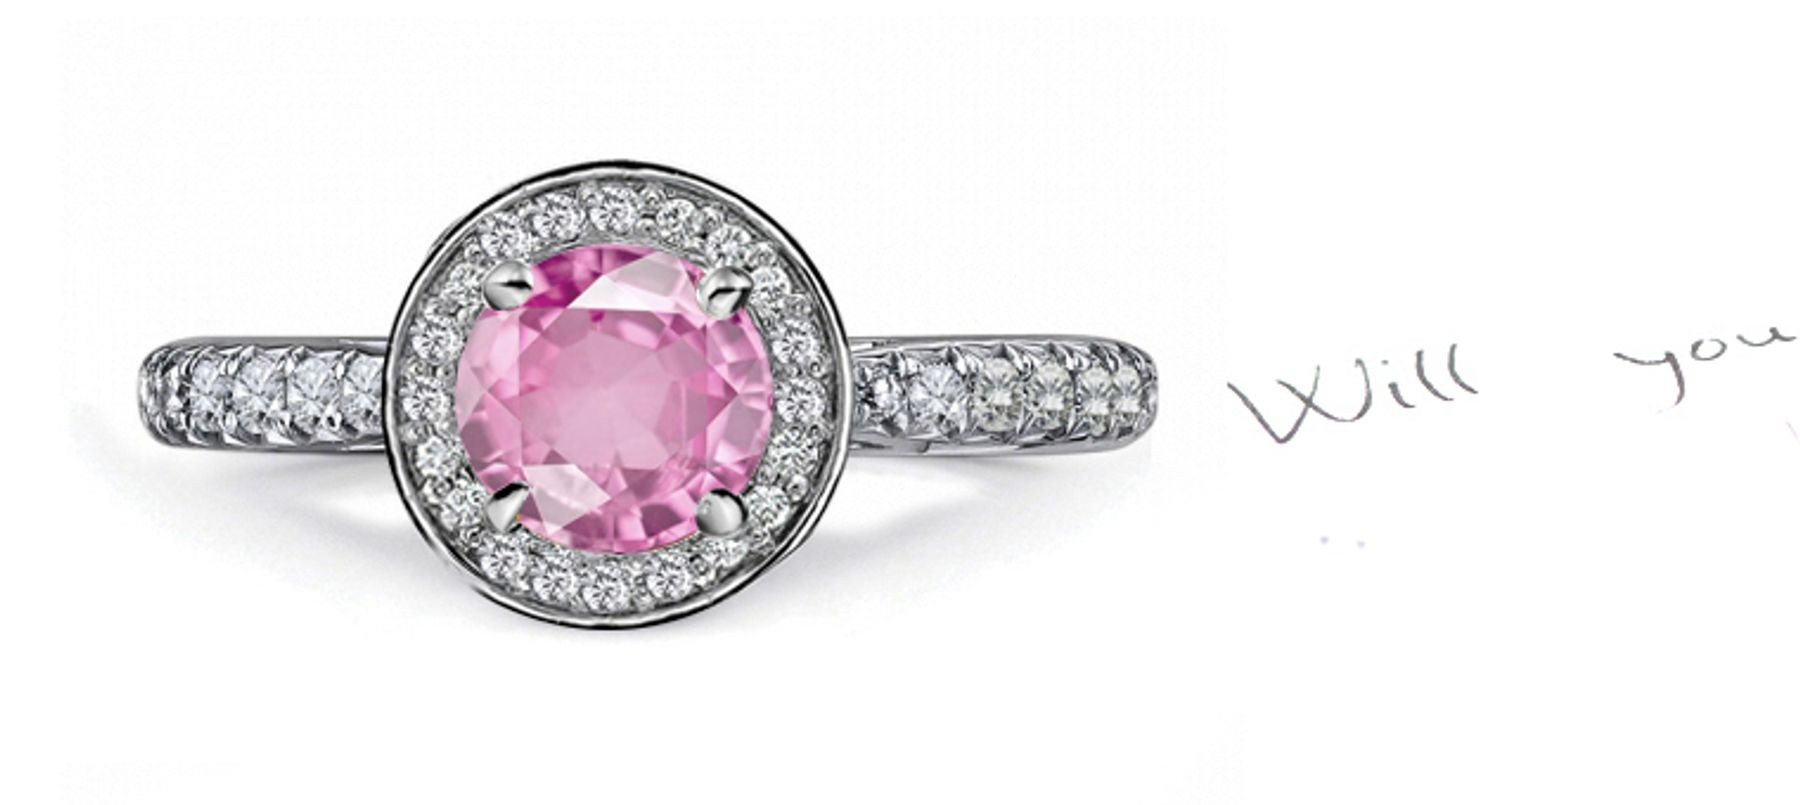 Impeccable: A Brilliant Pink Sapphire & Diamond Ring